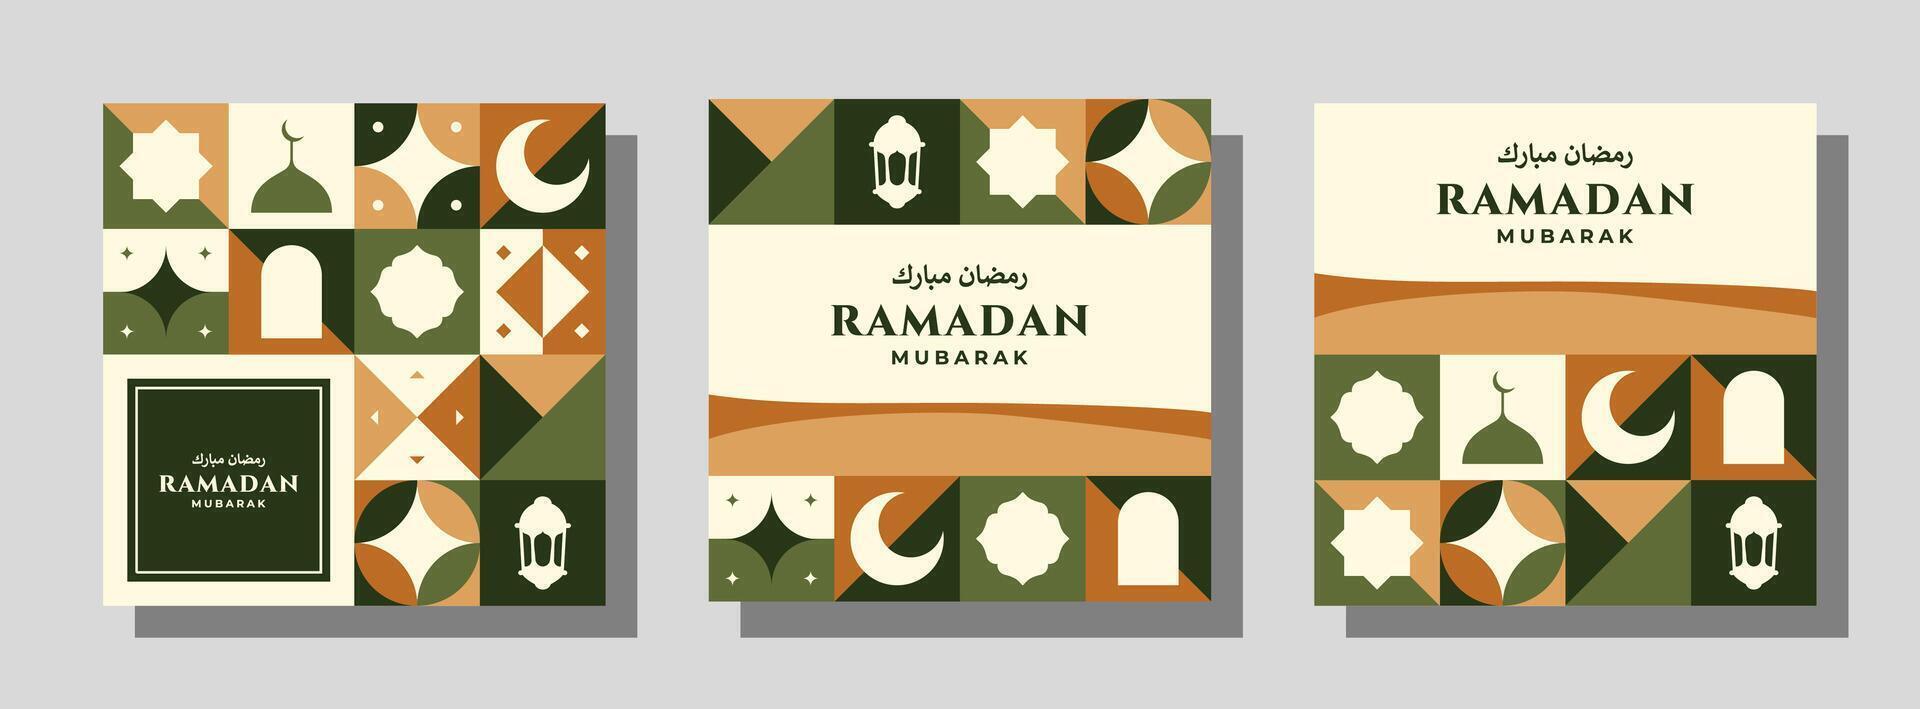 impostato di vettore a4 dimensione Ramadan mubarak modelli per manifesti, carte, copertine, e altri. bellissimo design con astratto geometrico modelli combinato nel eccellente colori.